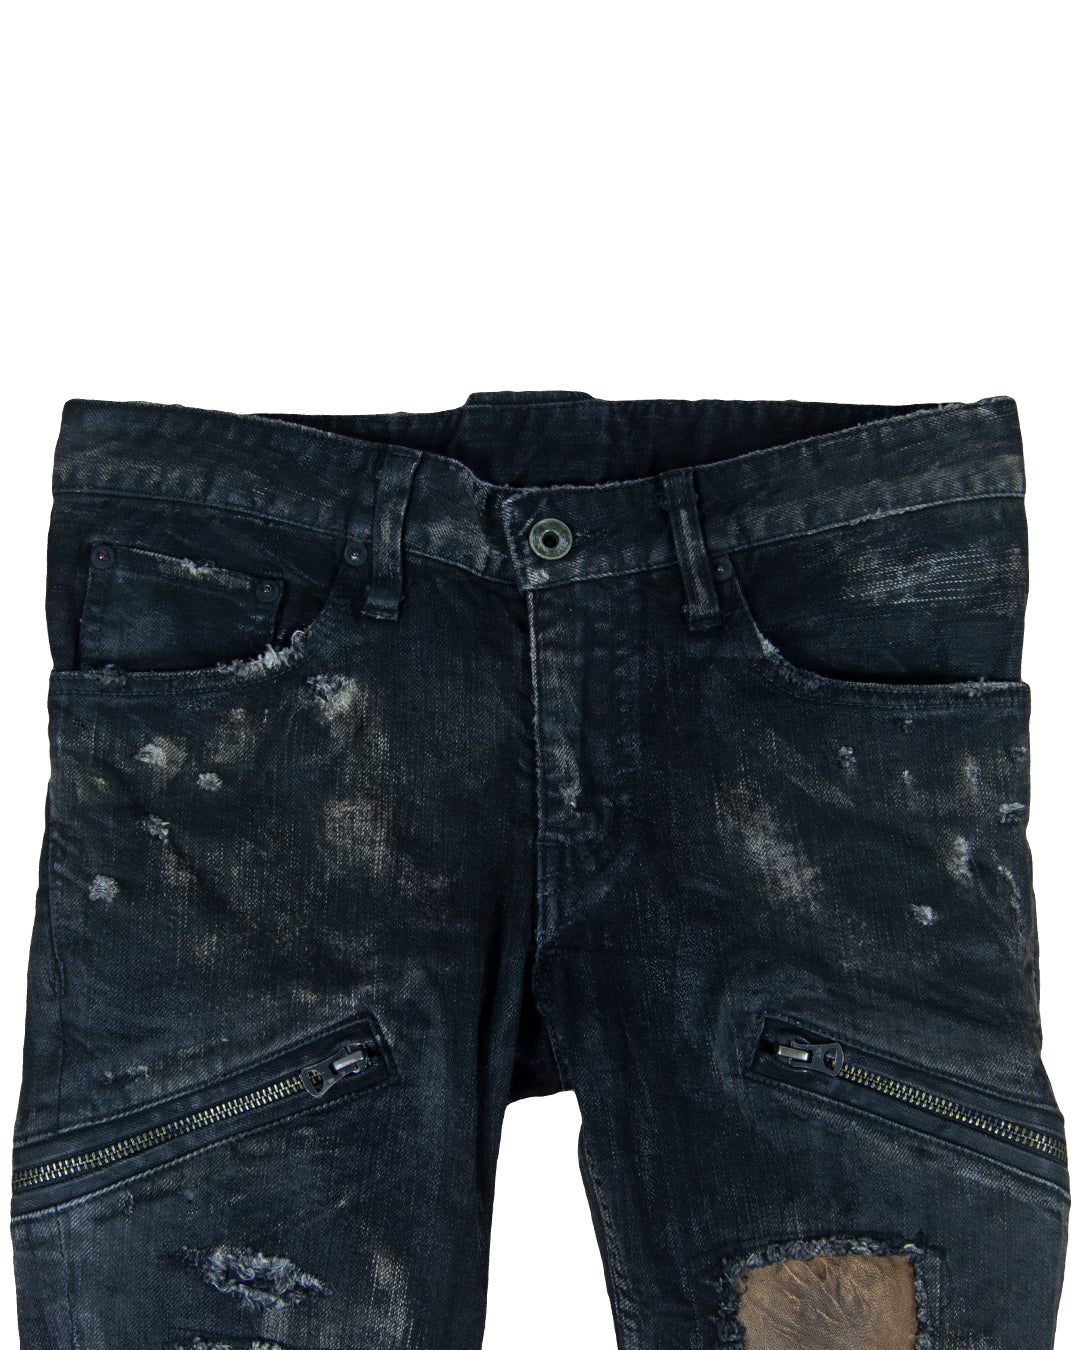 L.G.B. Waxed Distressed Skinny Jeans